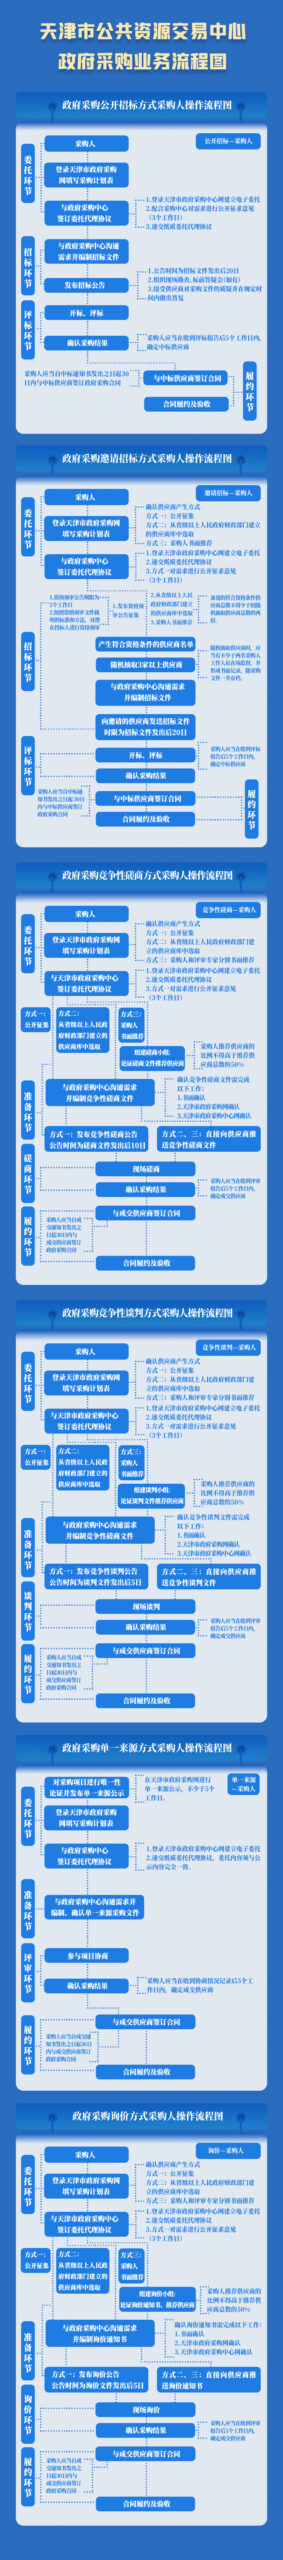 天津市公共资源交易中心政府采购业务流程图『采购人篇』